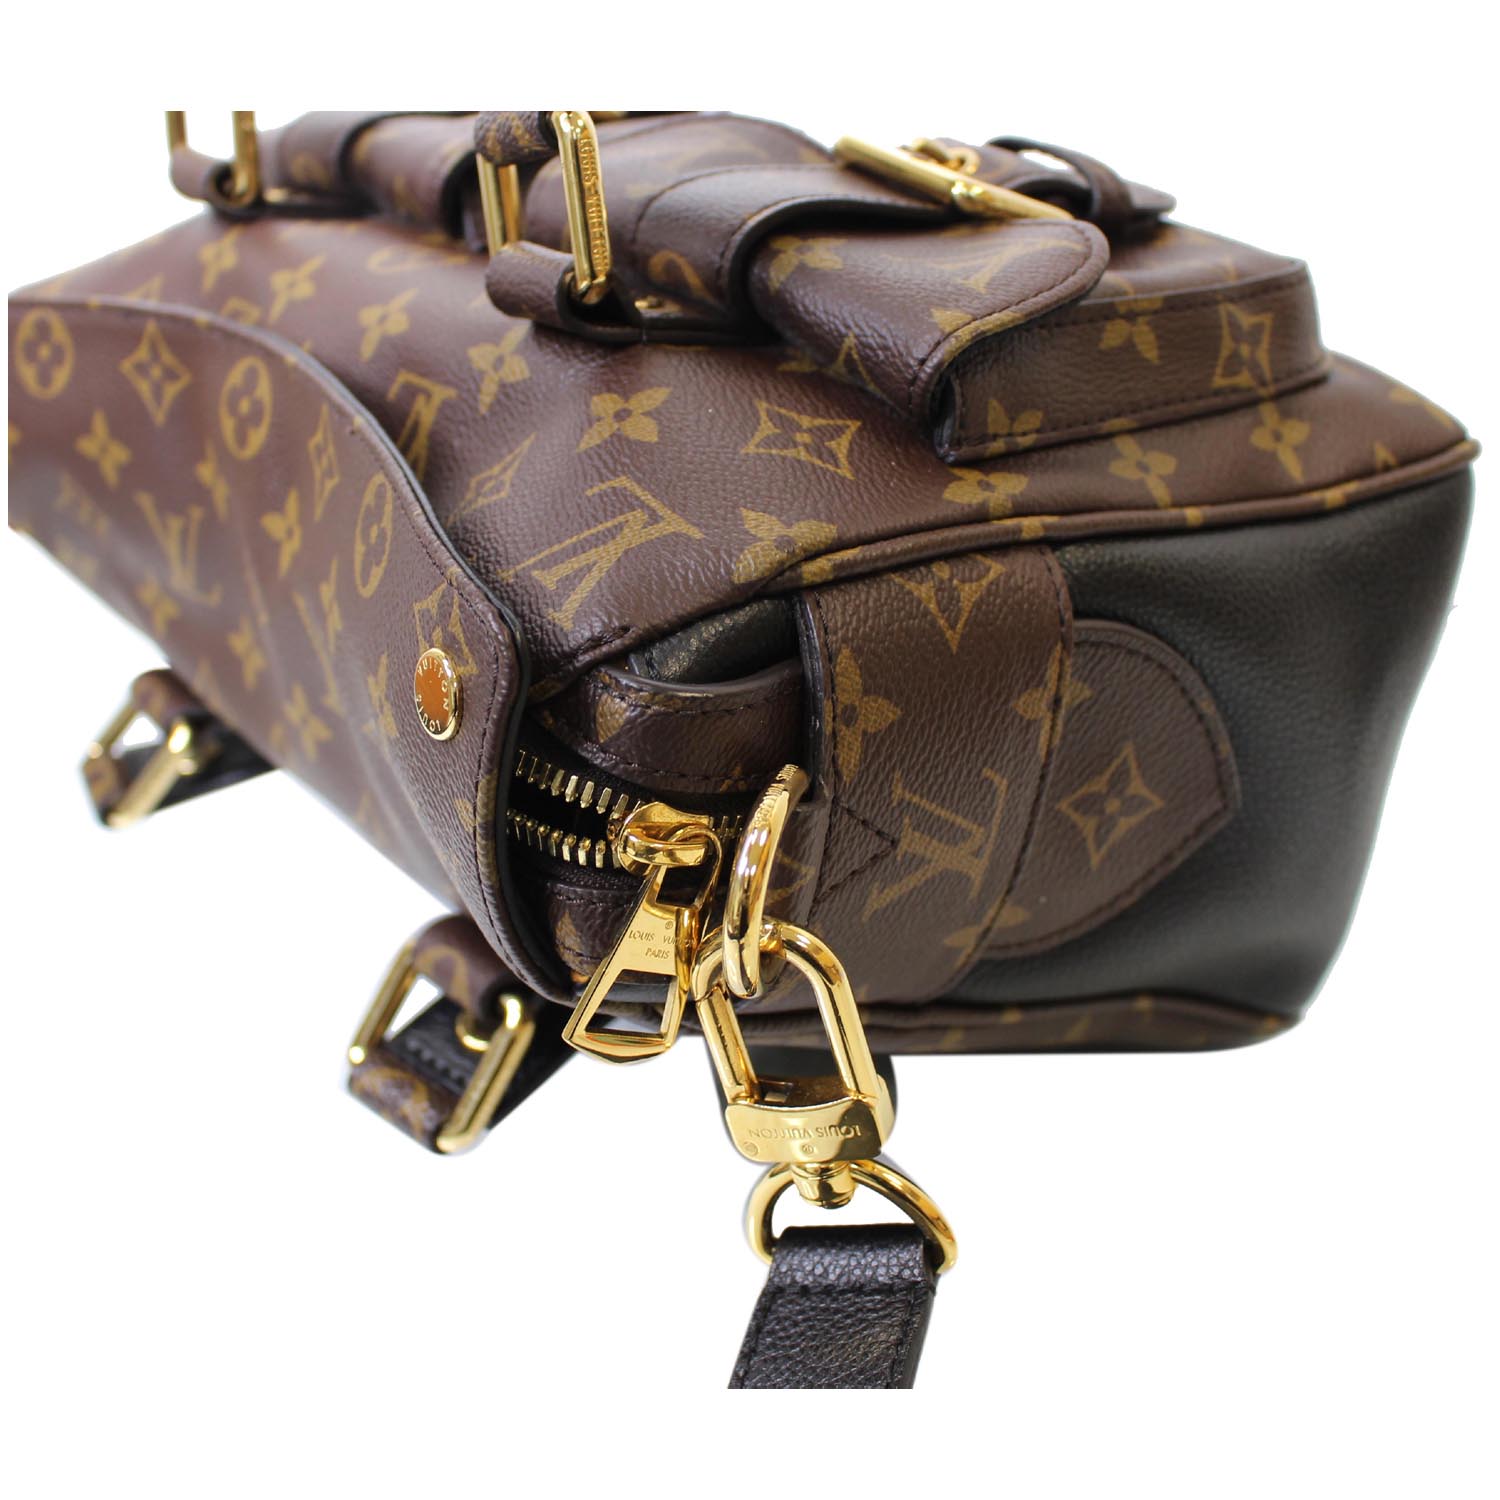 Louis Vuitton Manhattan Bag Has Been Updated